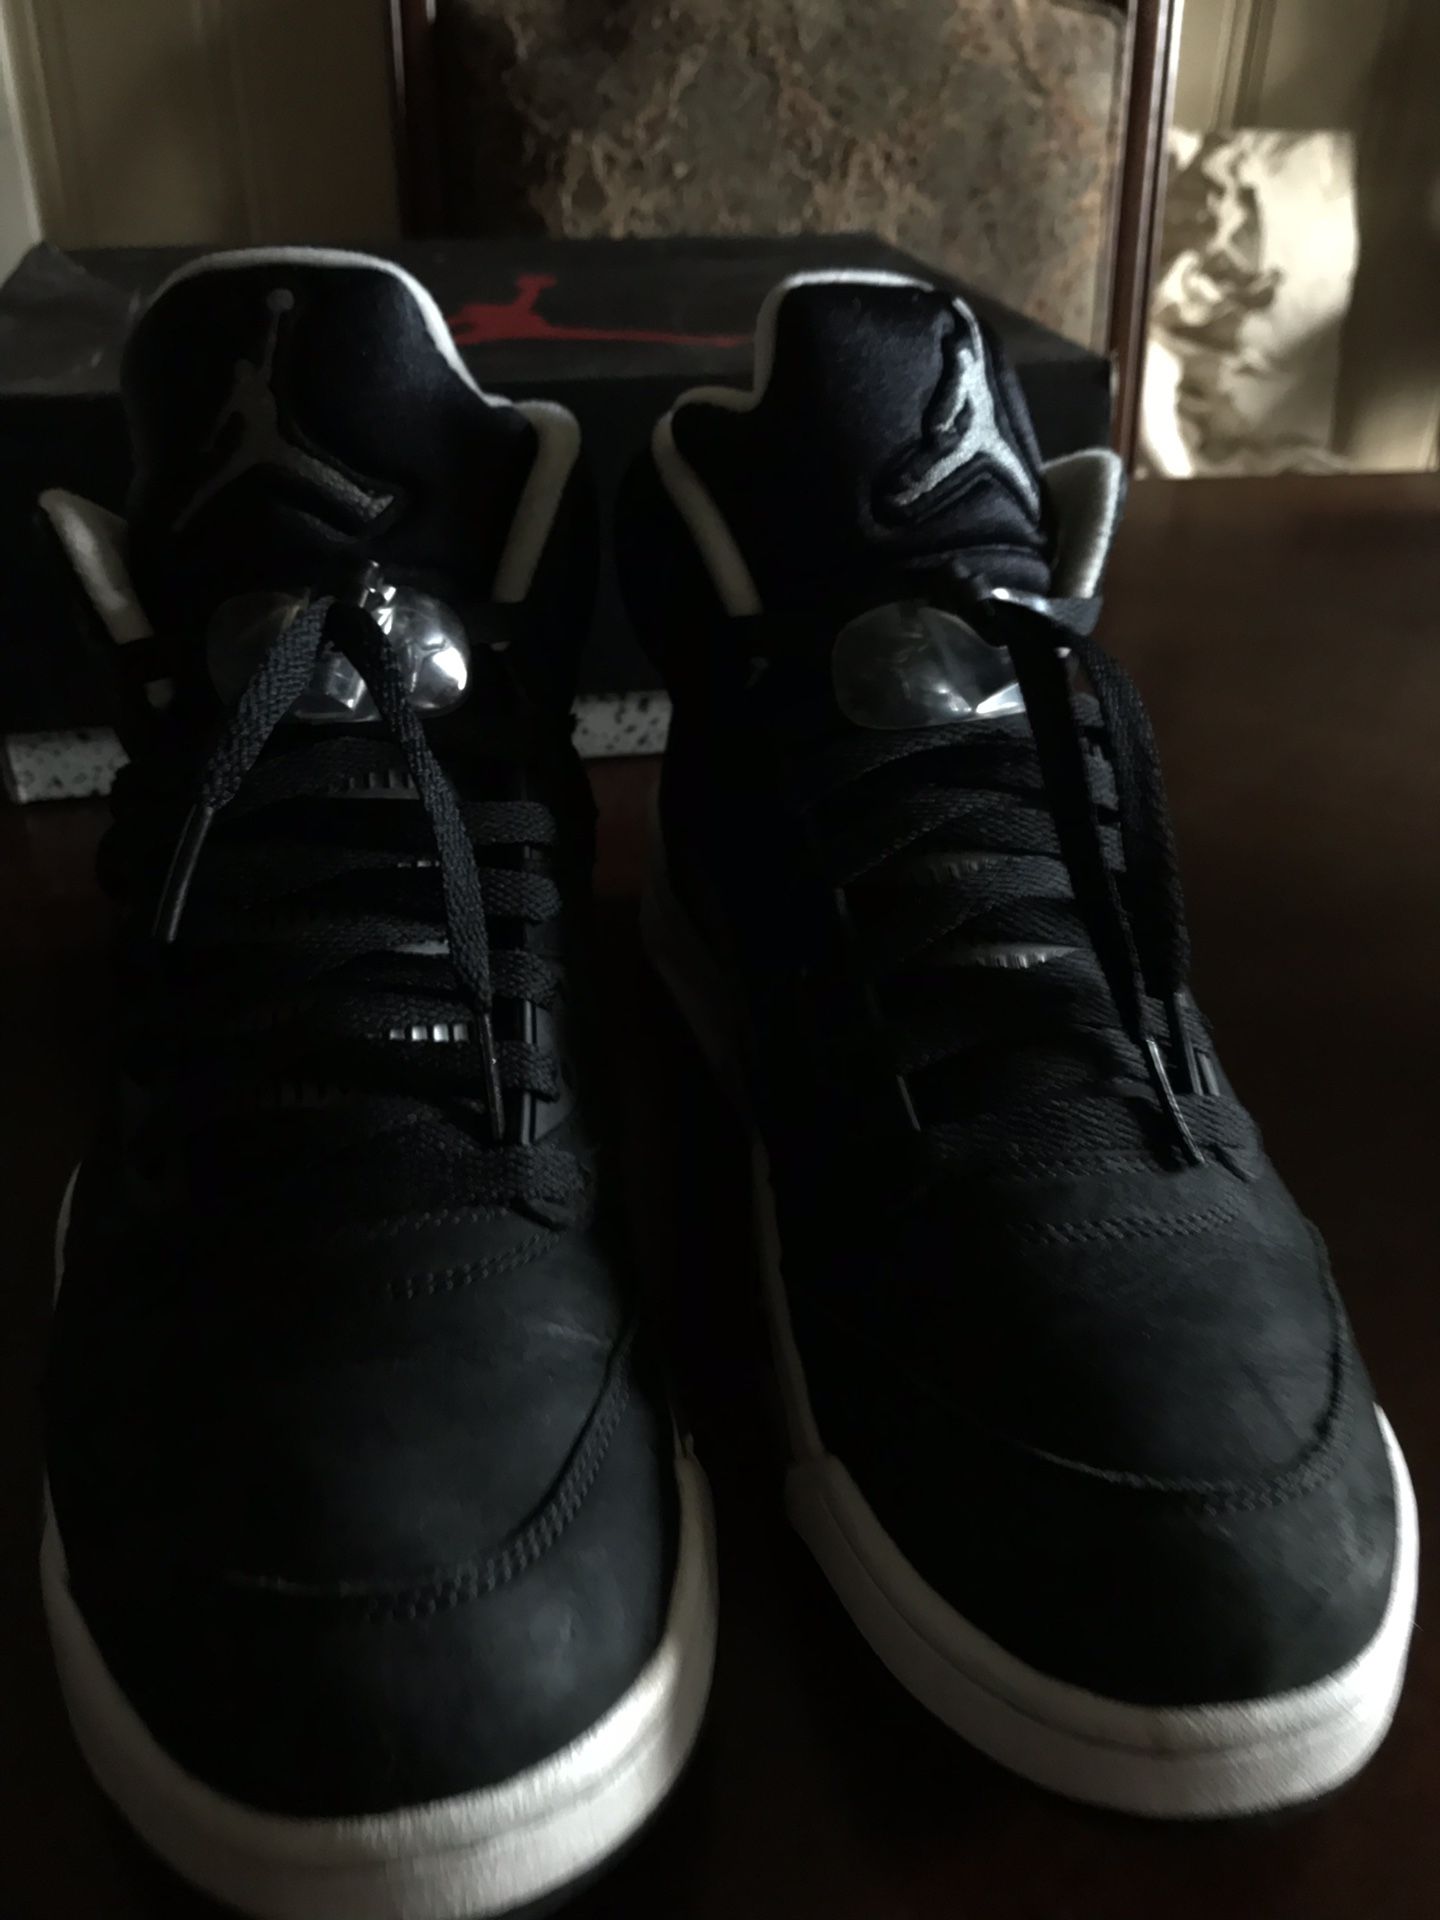 Air Jordan 5 “Oreo” Size 10